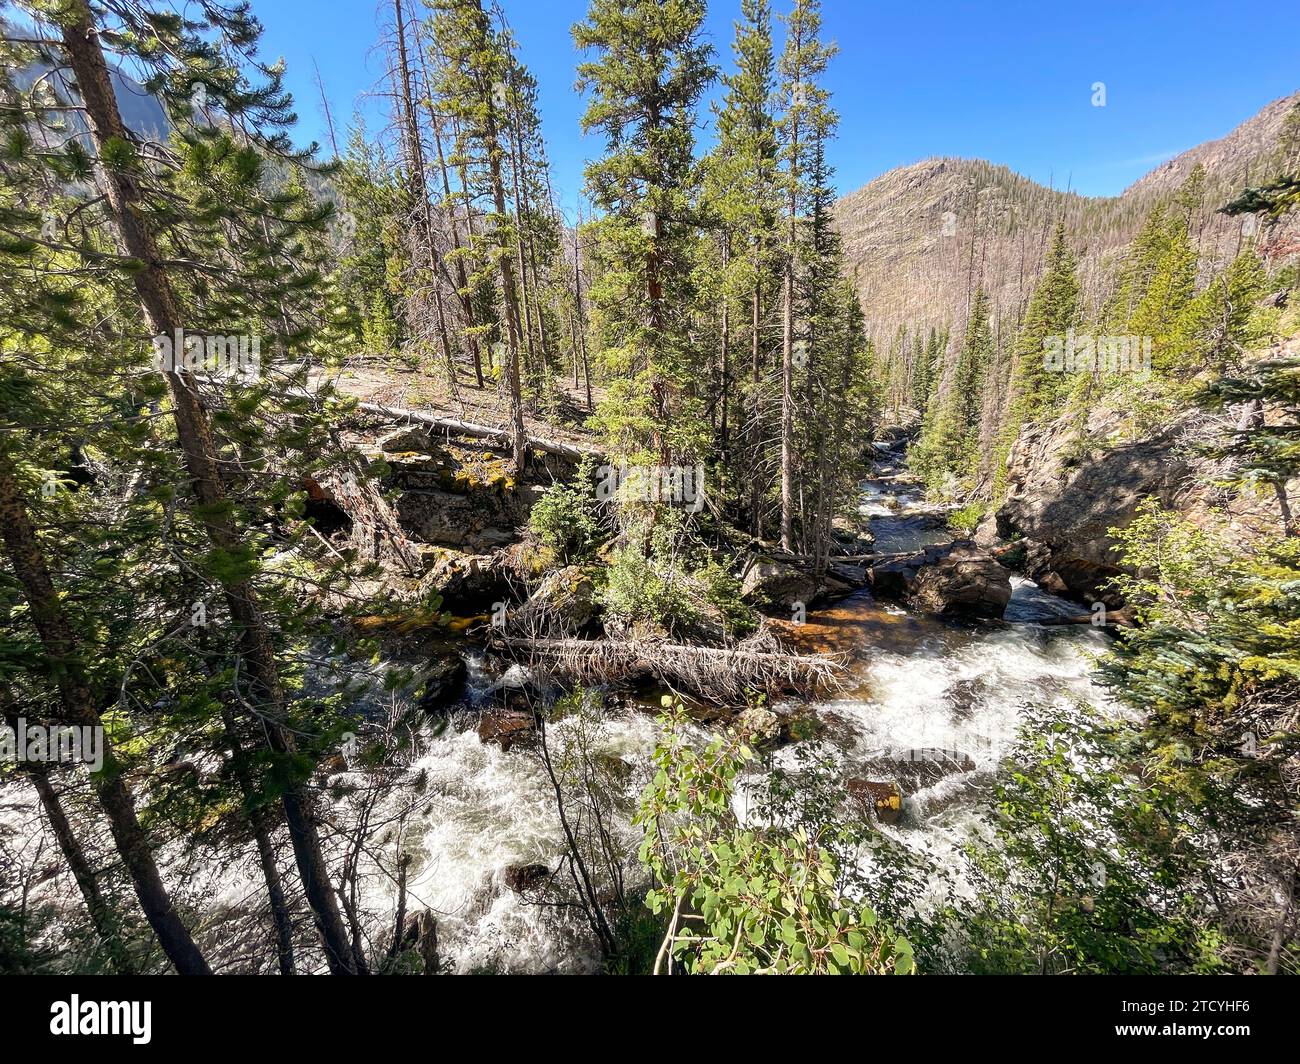 Le acque scintillanti si snodano attraverso una valle ricoperta di pini nel Parco Nazionale delle Montagne Rocciose, una testimonianza dello splendore della natura. Foto Stock